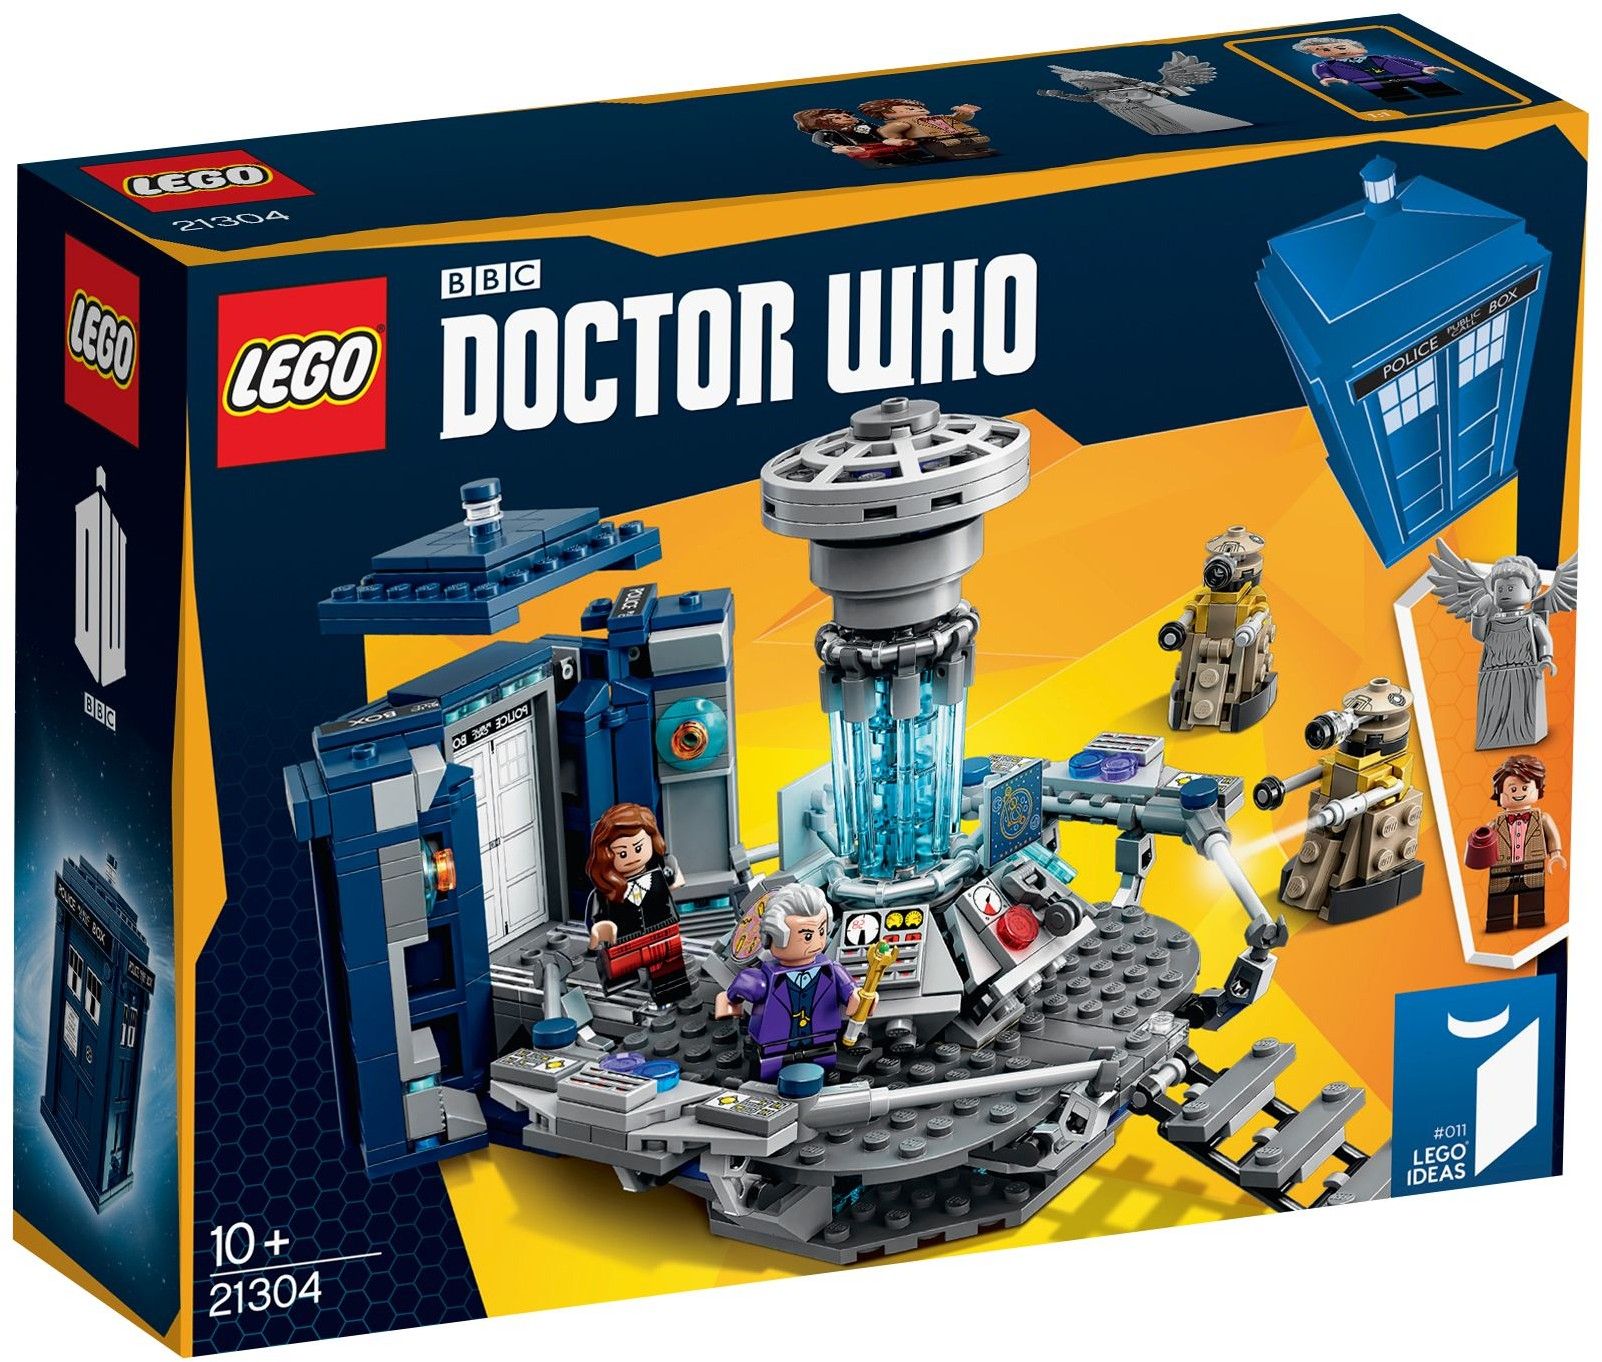 LEGO 21304 Doctor who